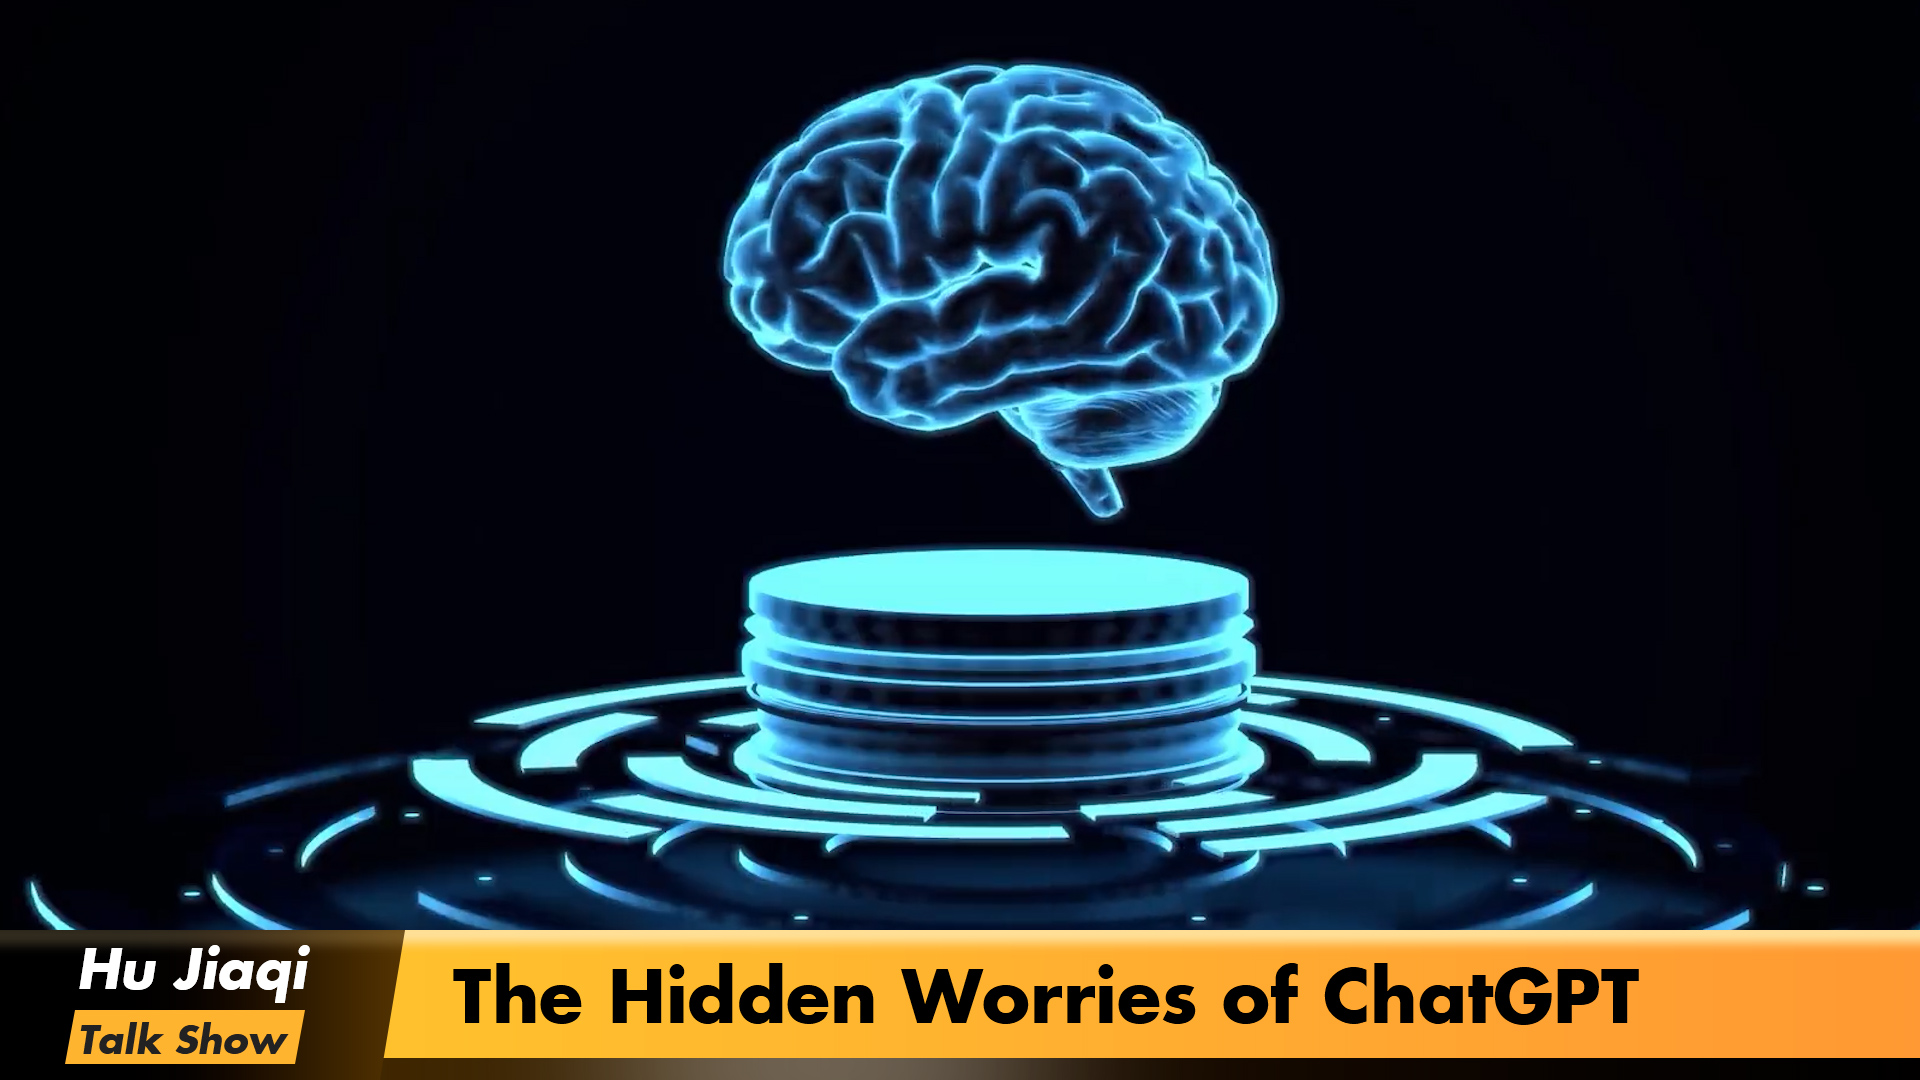 The Hidden Worries of ChatGPT